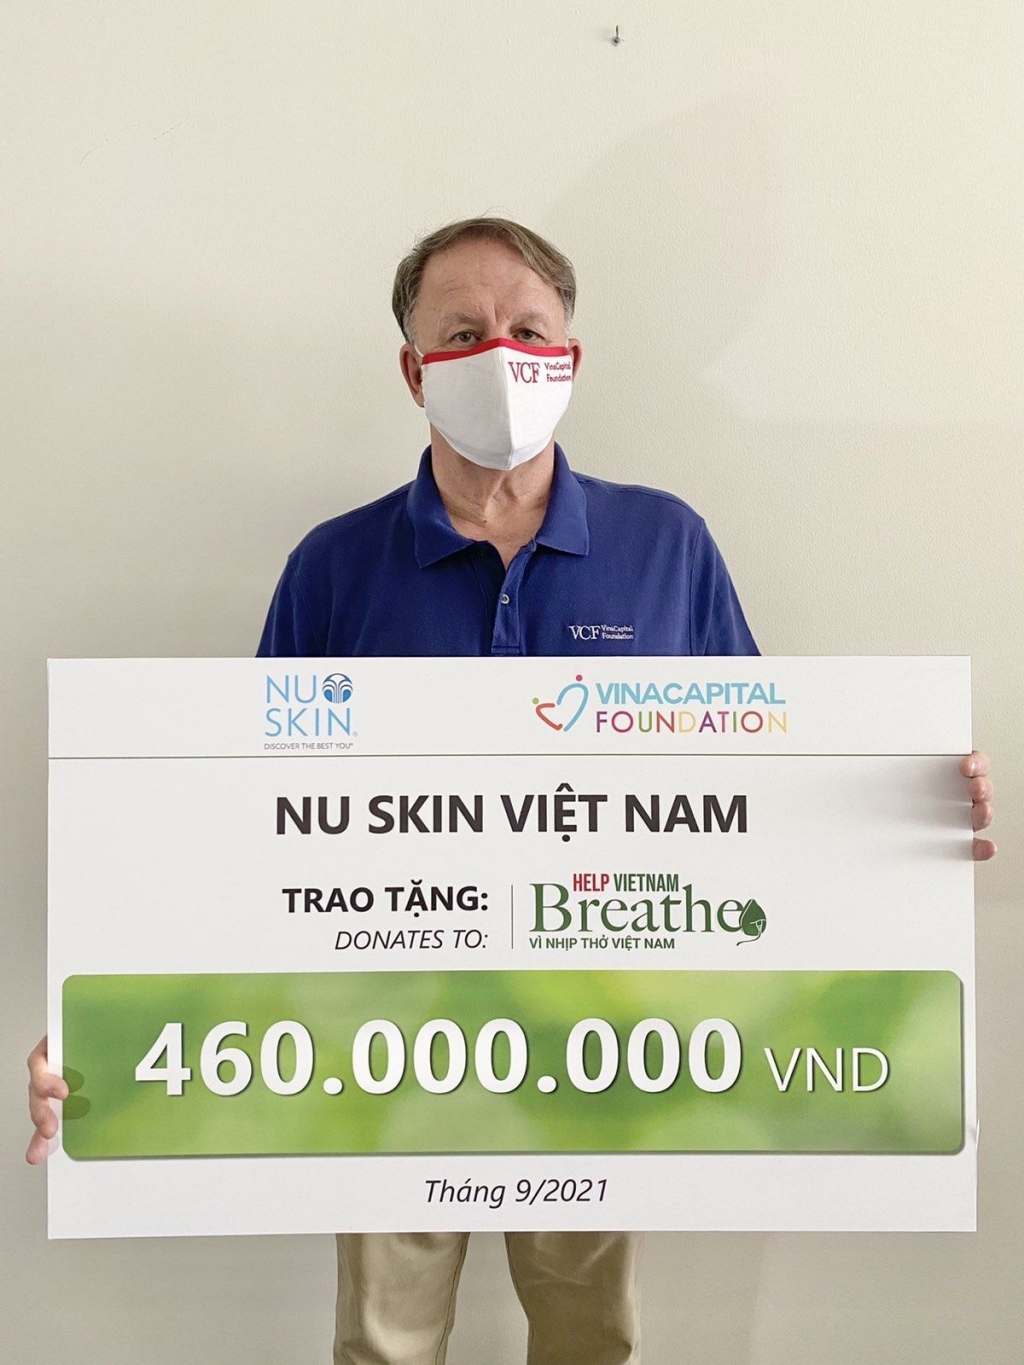 H7-Đại diện VinaCapital Foundation nhận tài trợ từ Nu Skin Việt Nam